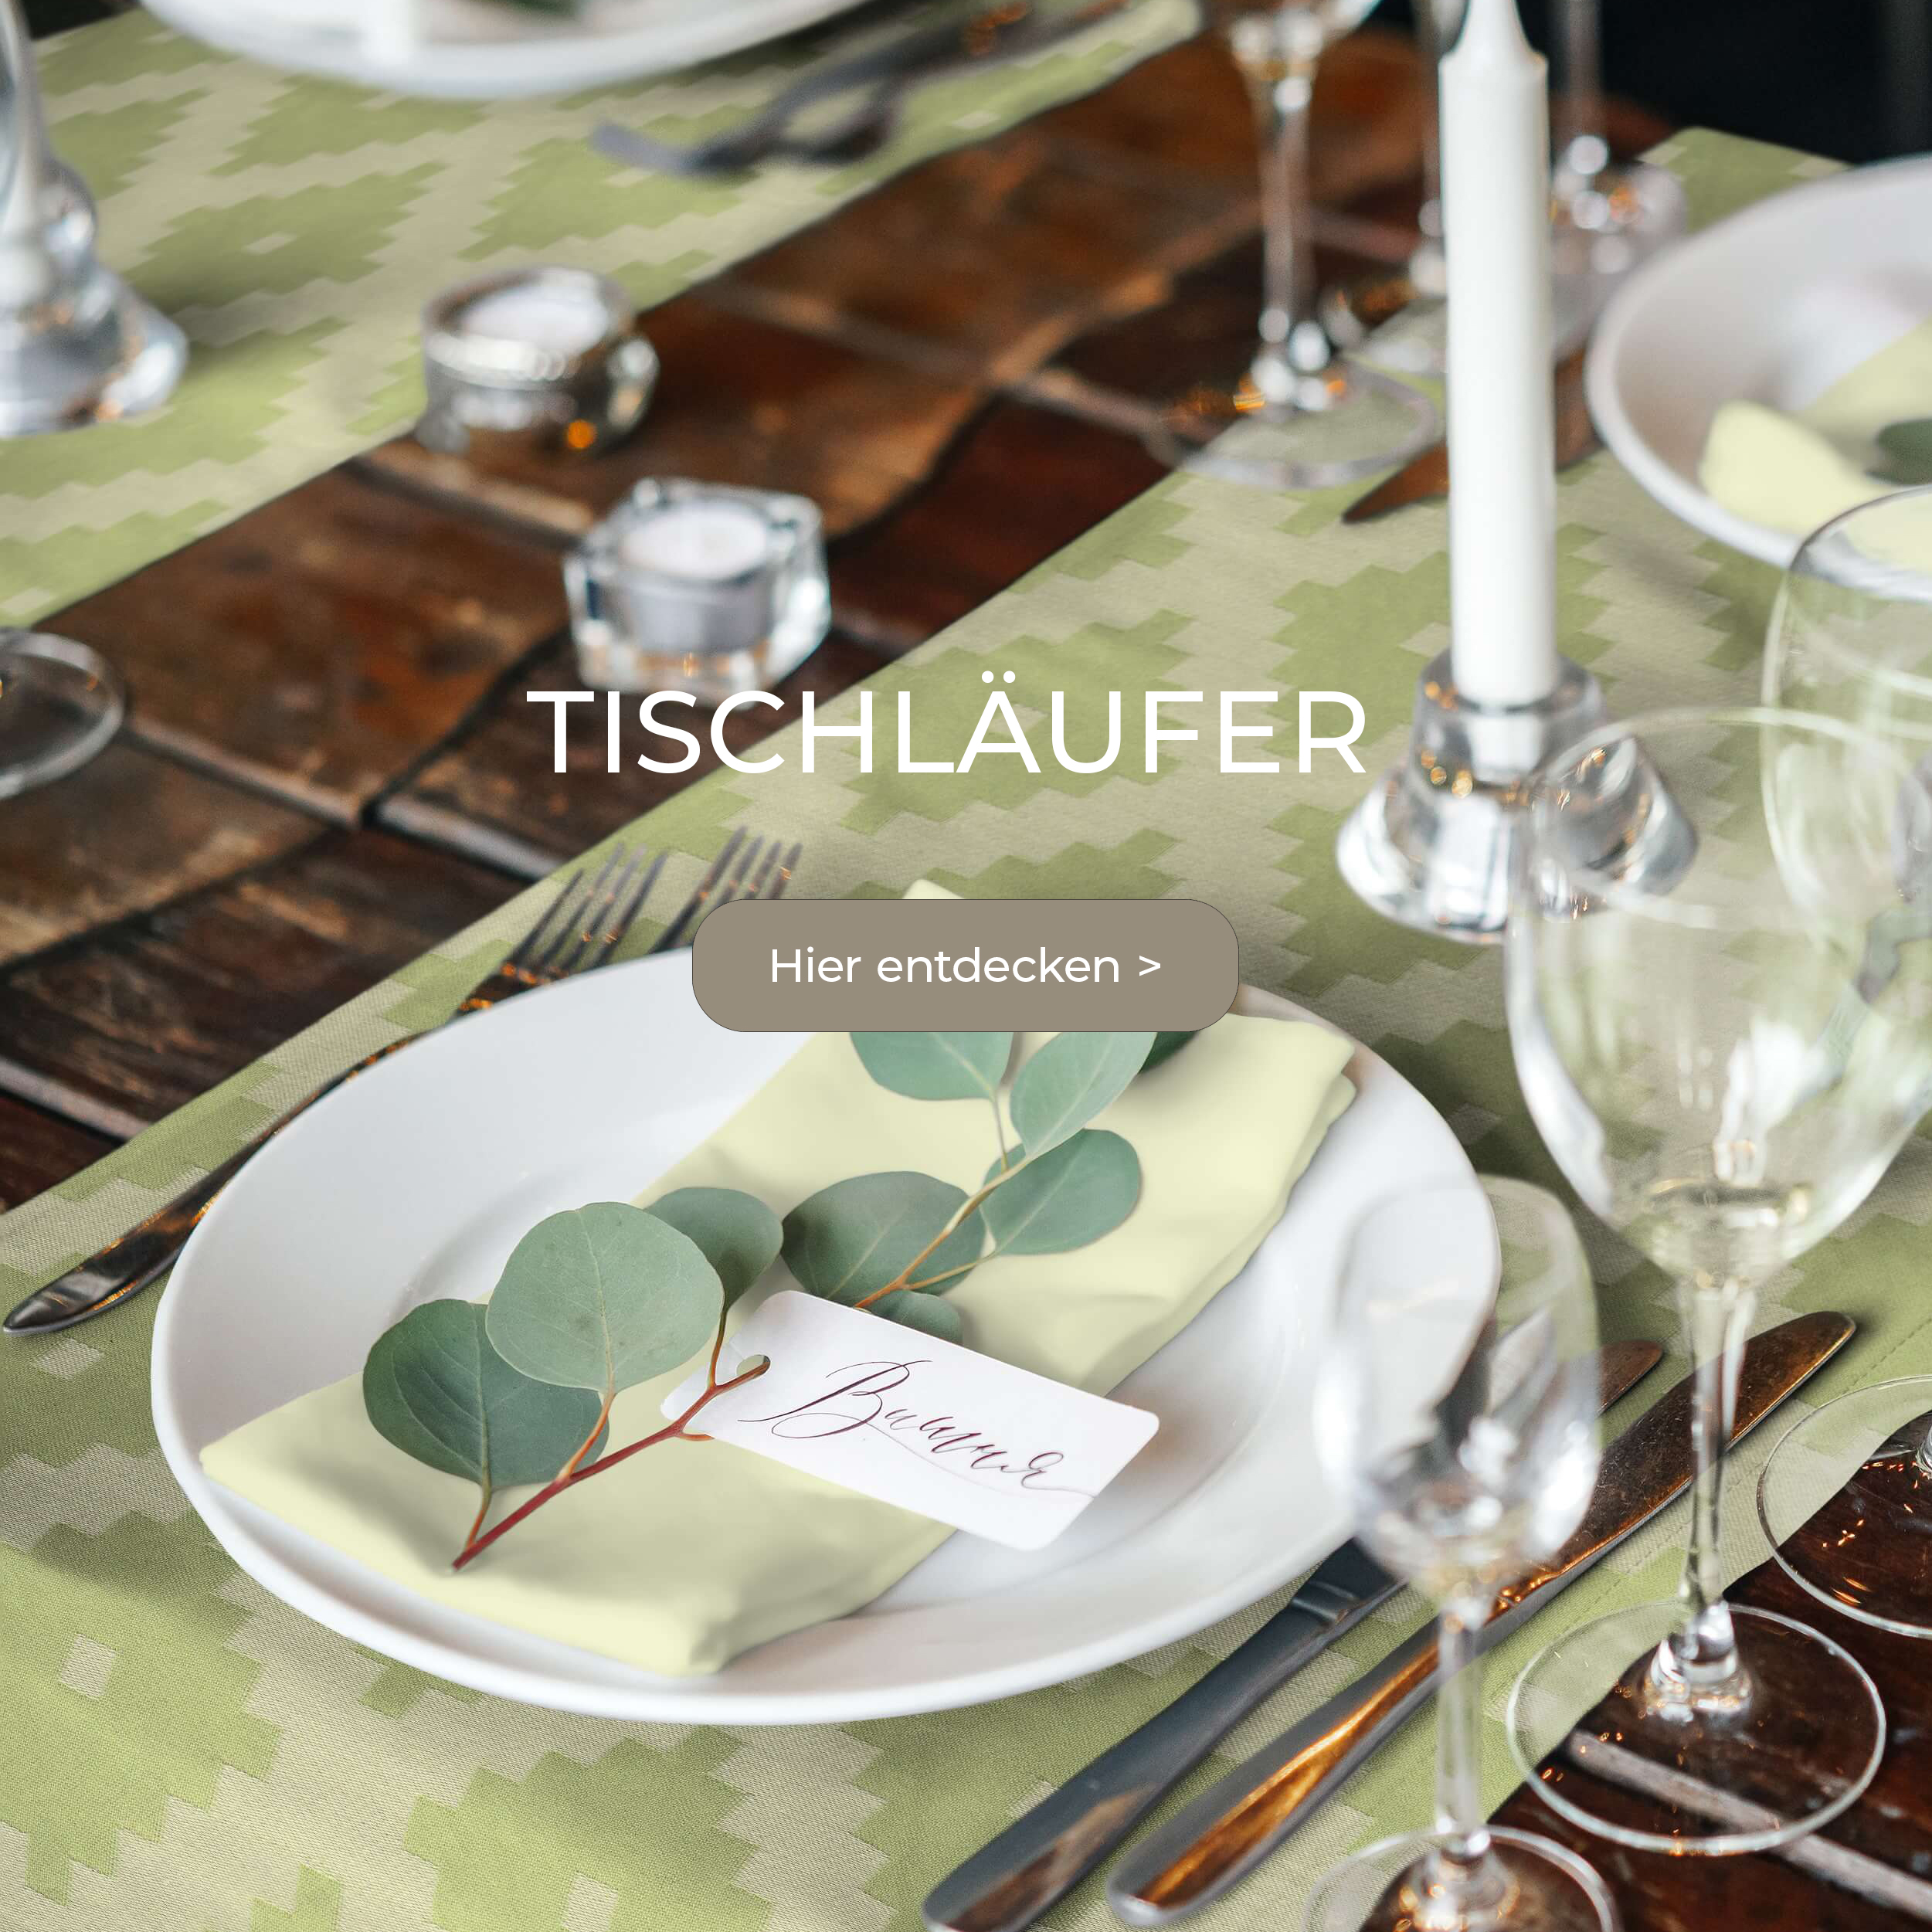 Tischläufer aus Bio-Baumwolle: Perfekter Stoffservietten Tischset Kombipartner und zu